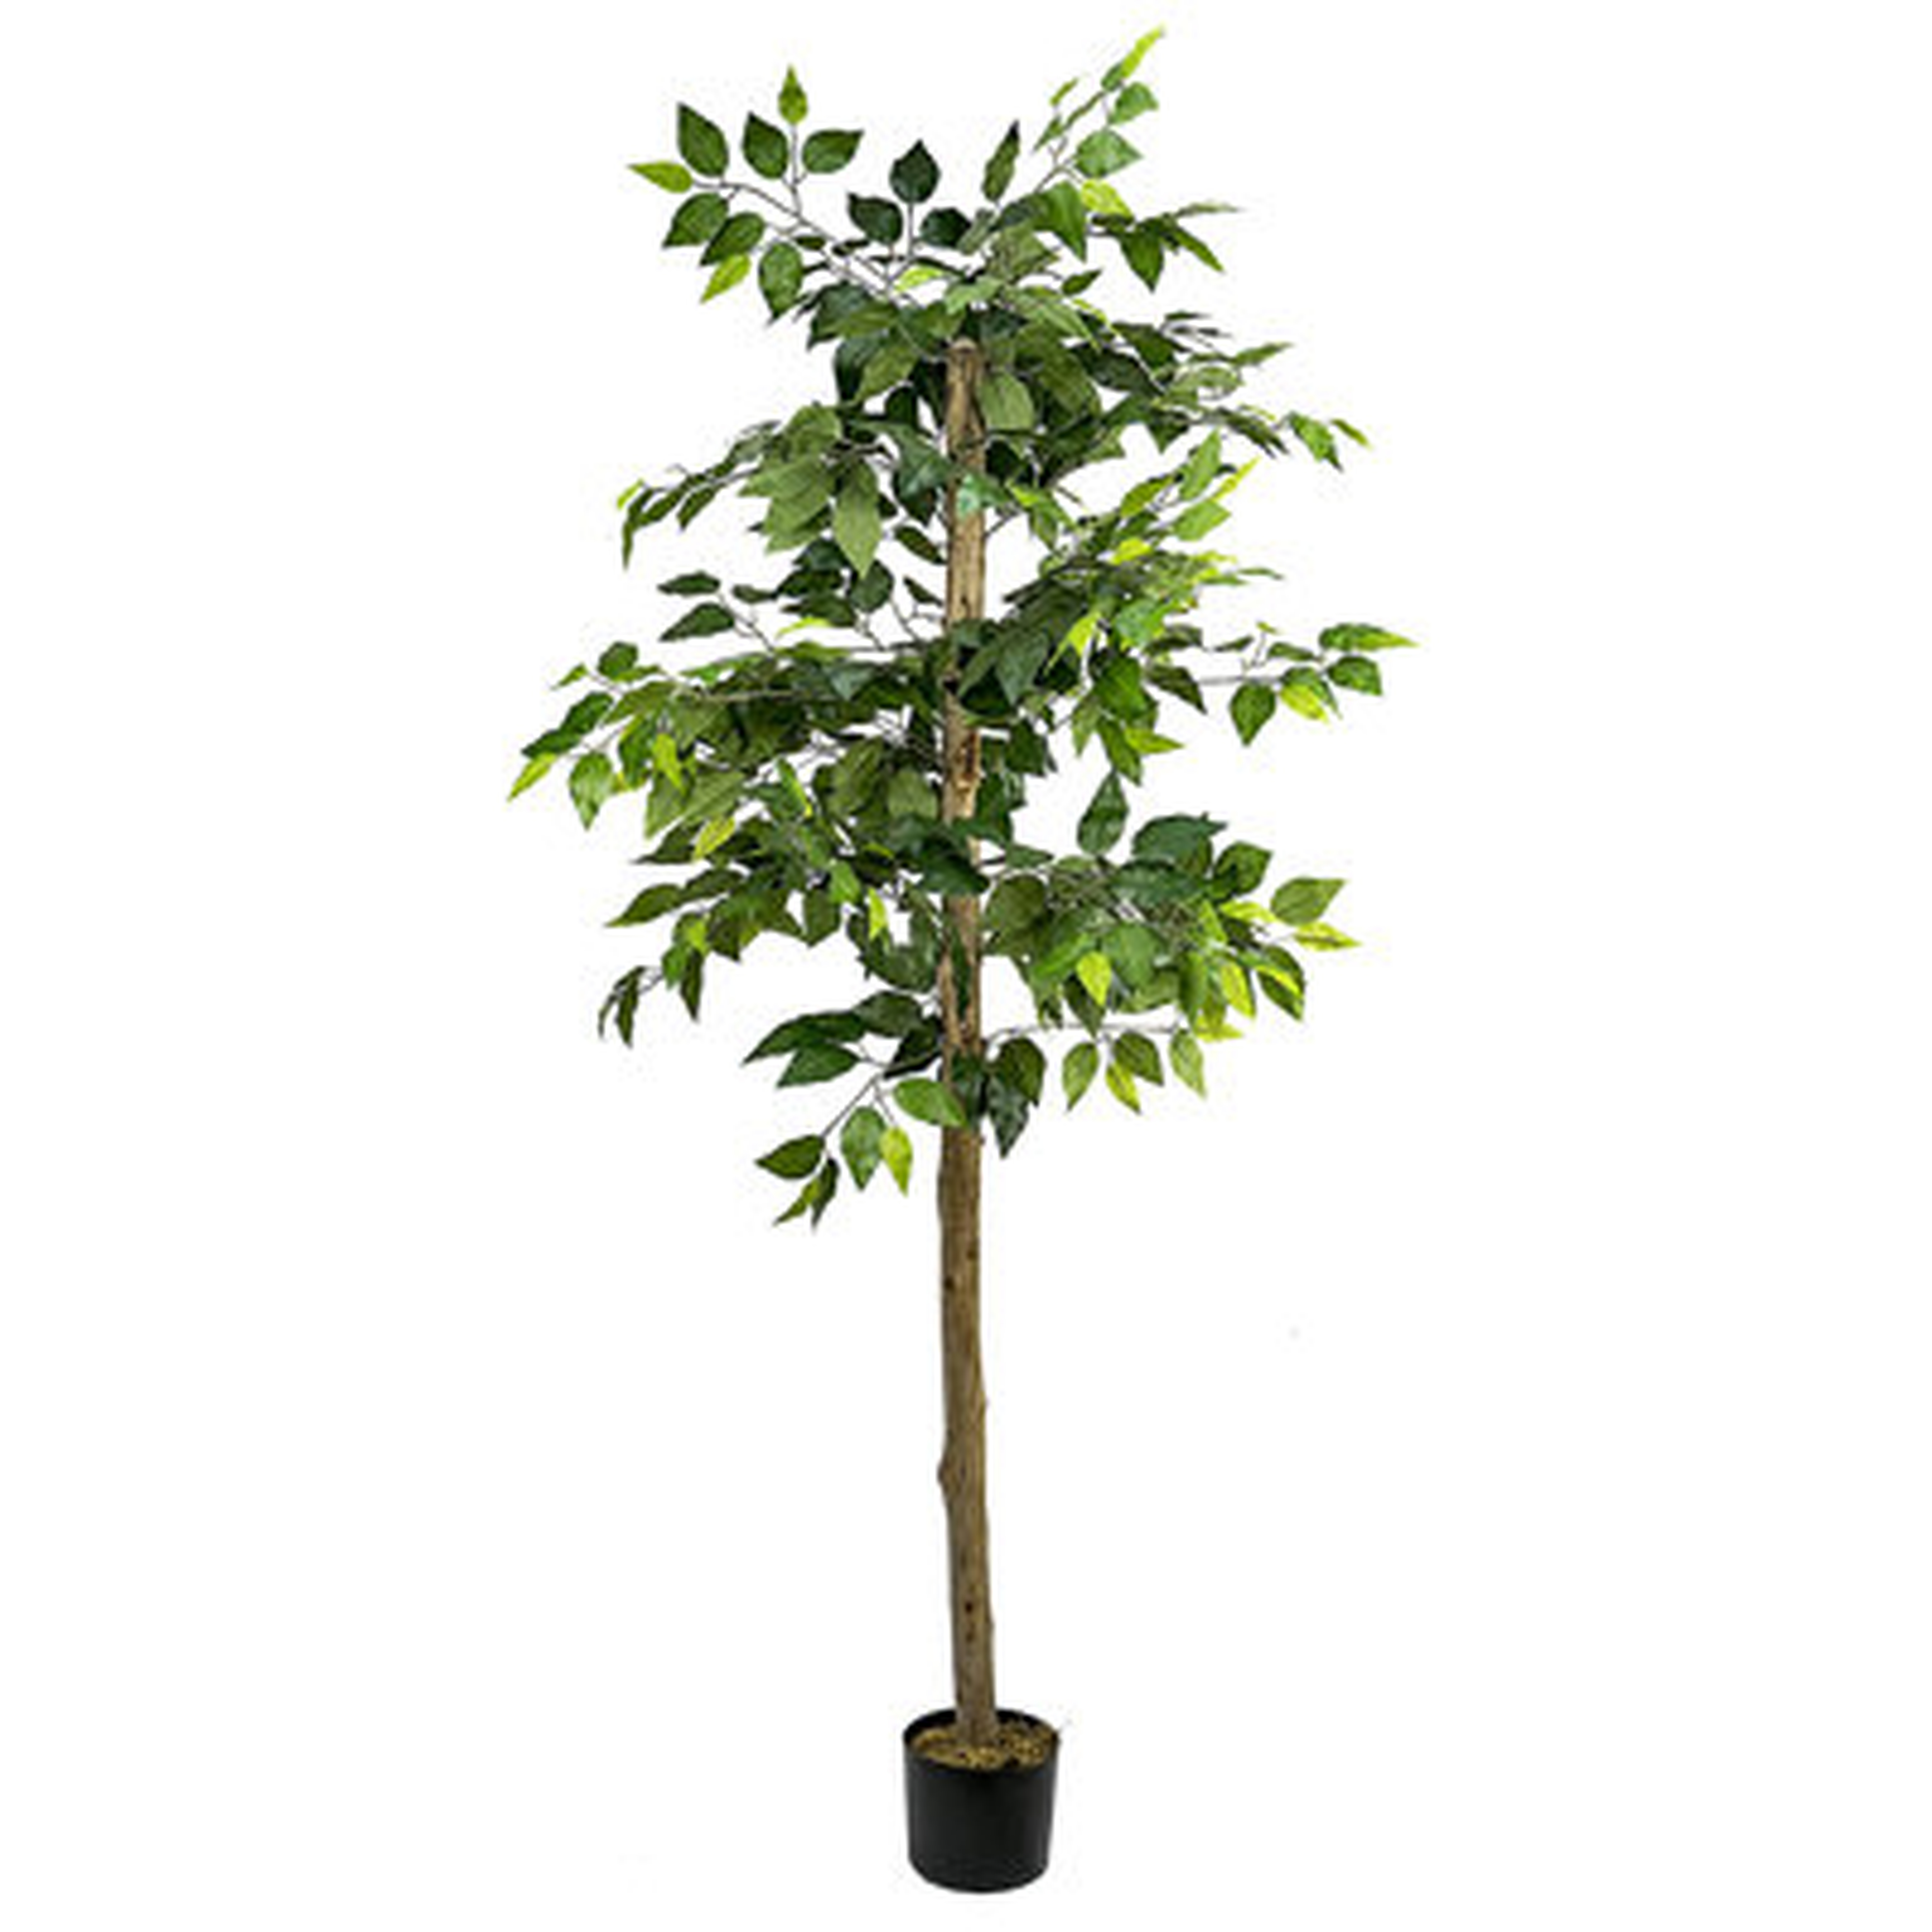 72" Artificial Ficus Tree in Pot - Wayfair